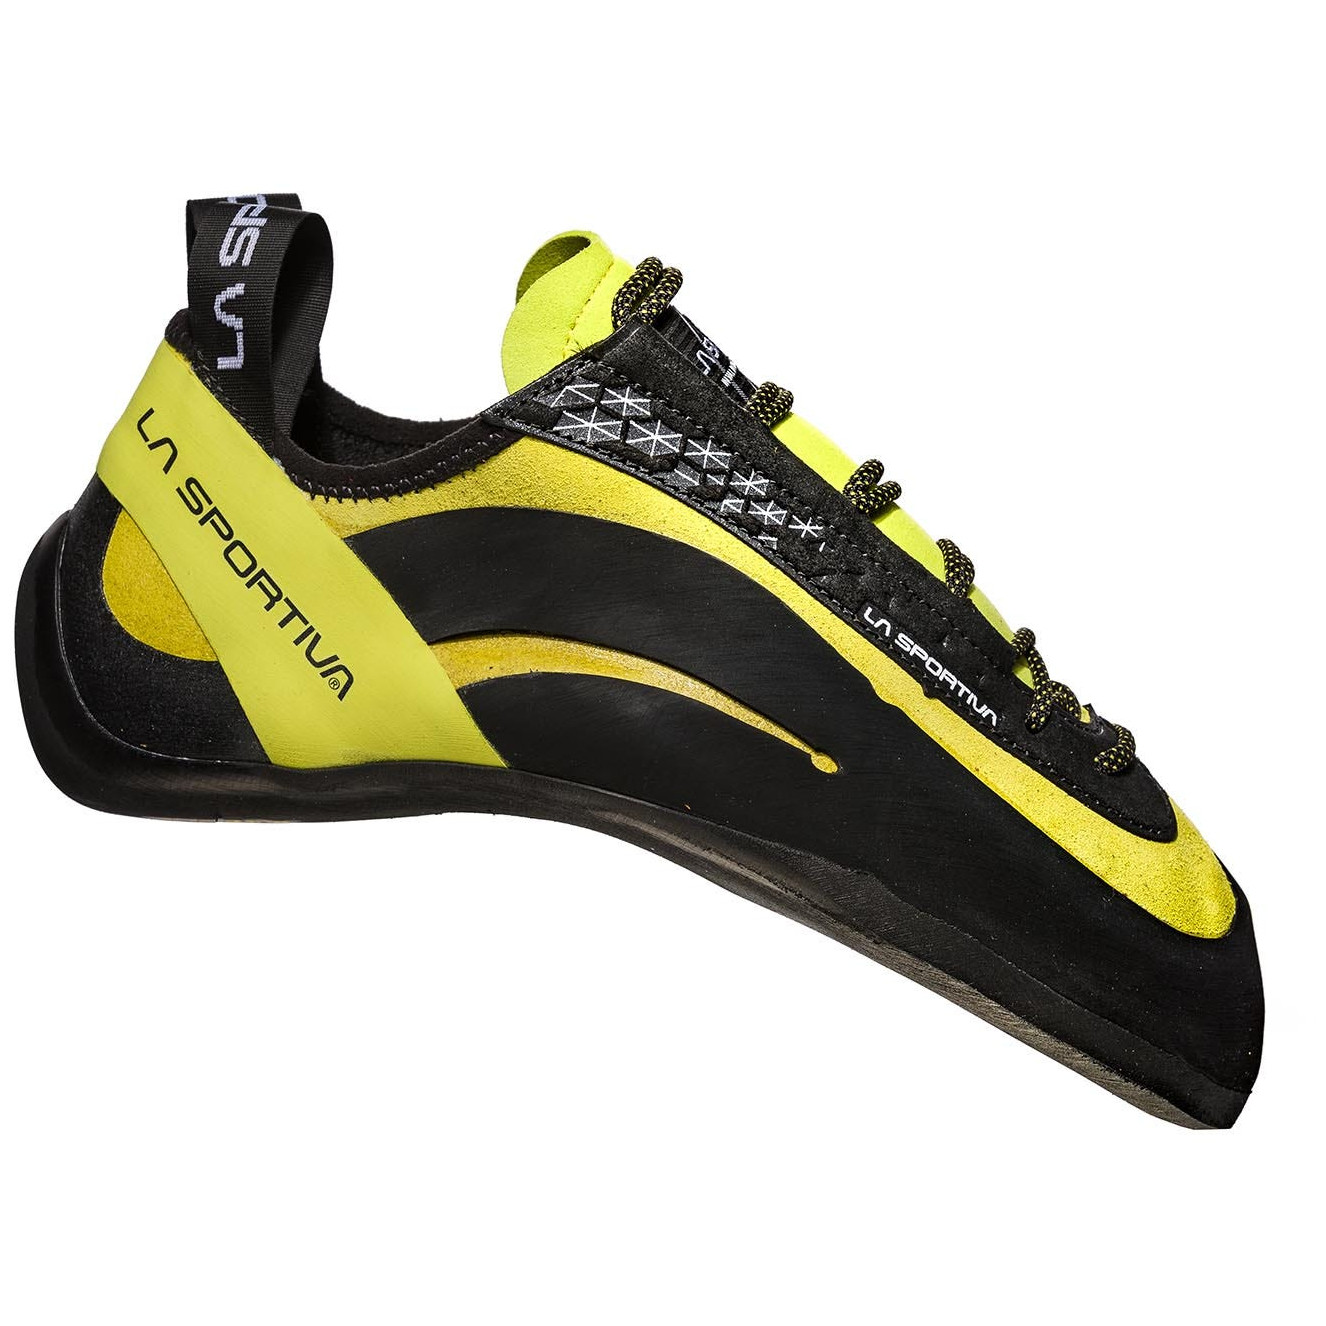 Lezečky La Sportiva Miura (20J) Velikost bot (EU): 37 / Barva: černá/žlutá